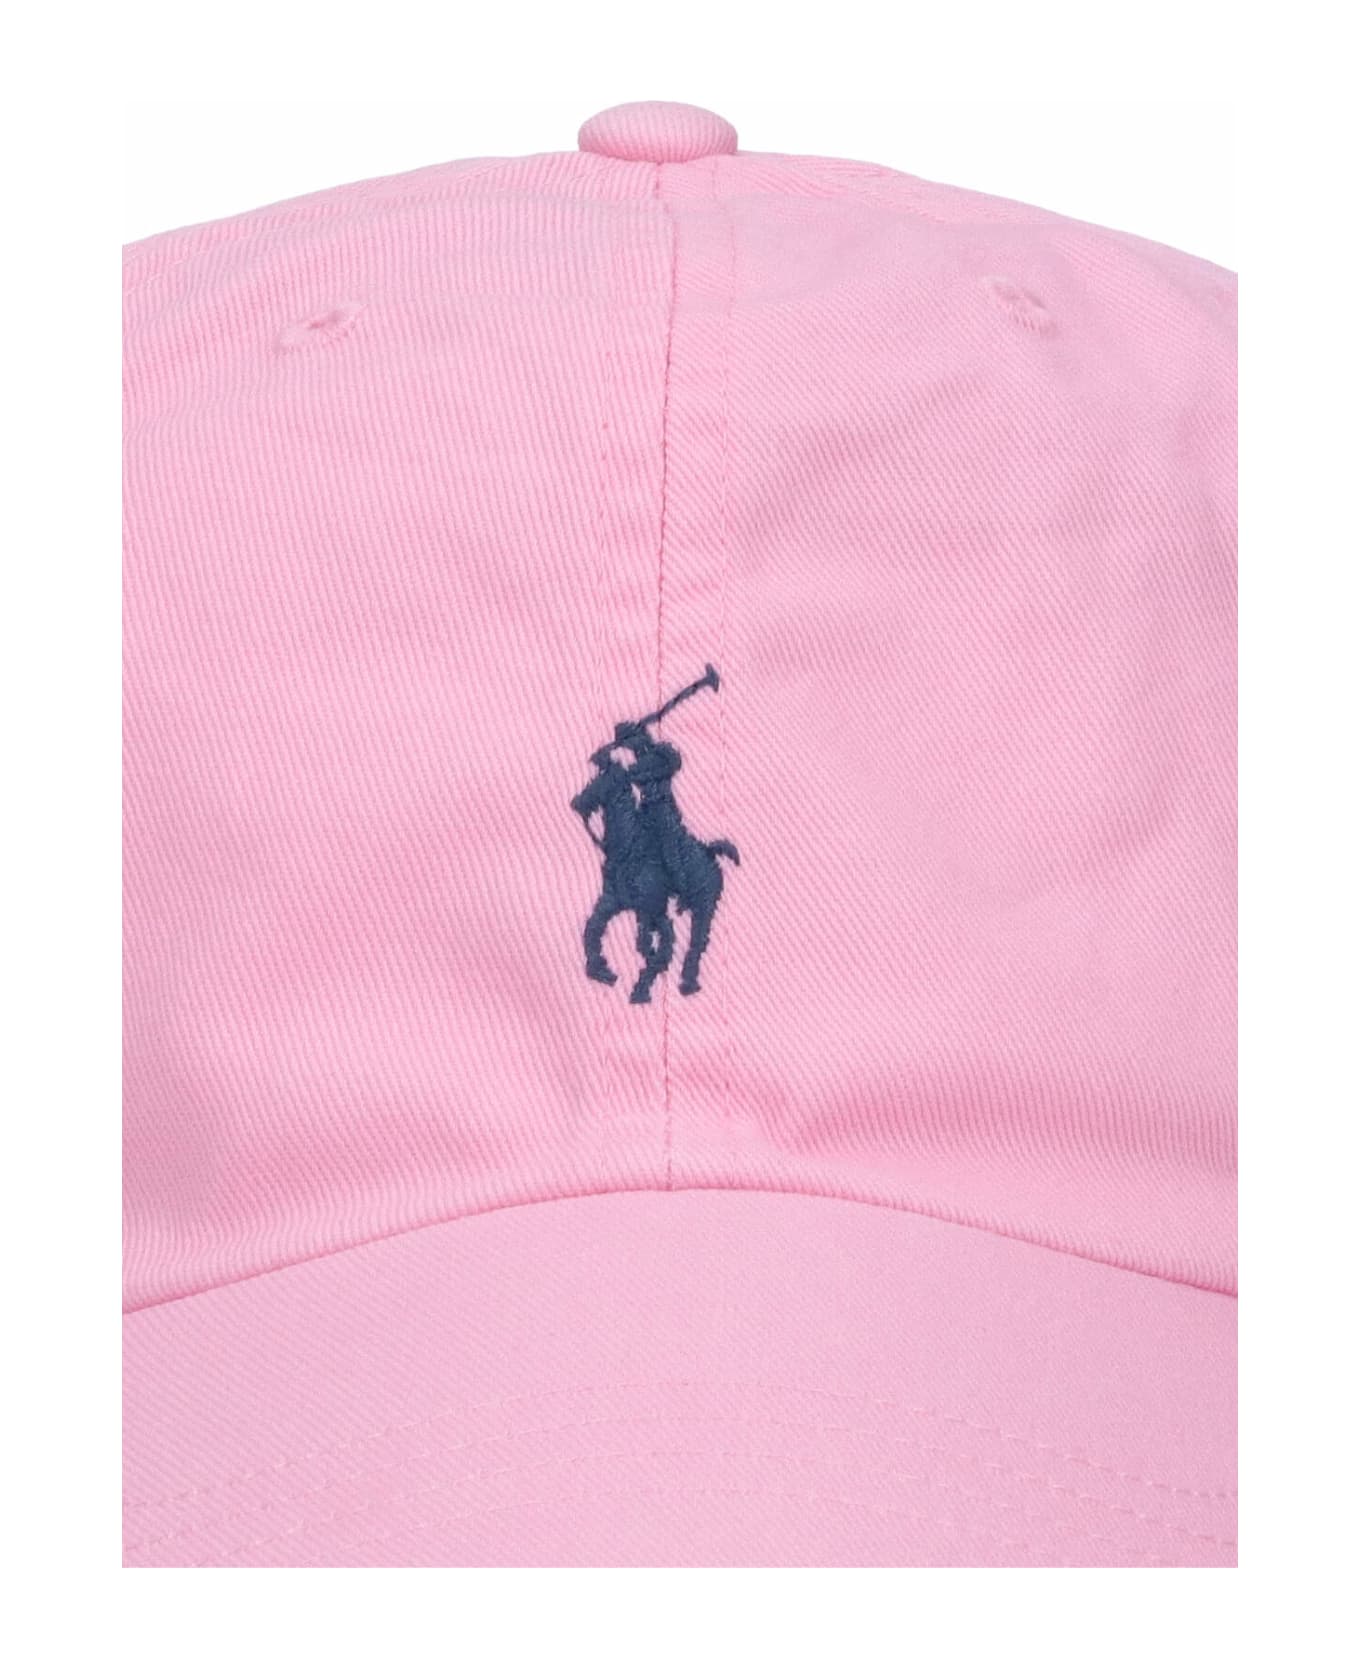 Polo Ralph Lauren Logo Baseball Cap - Pink